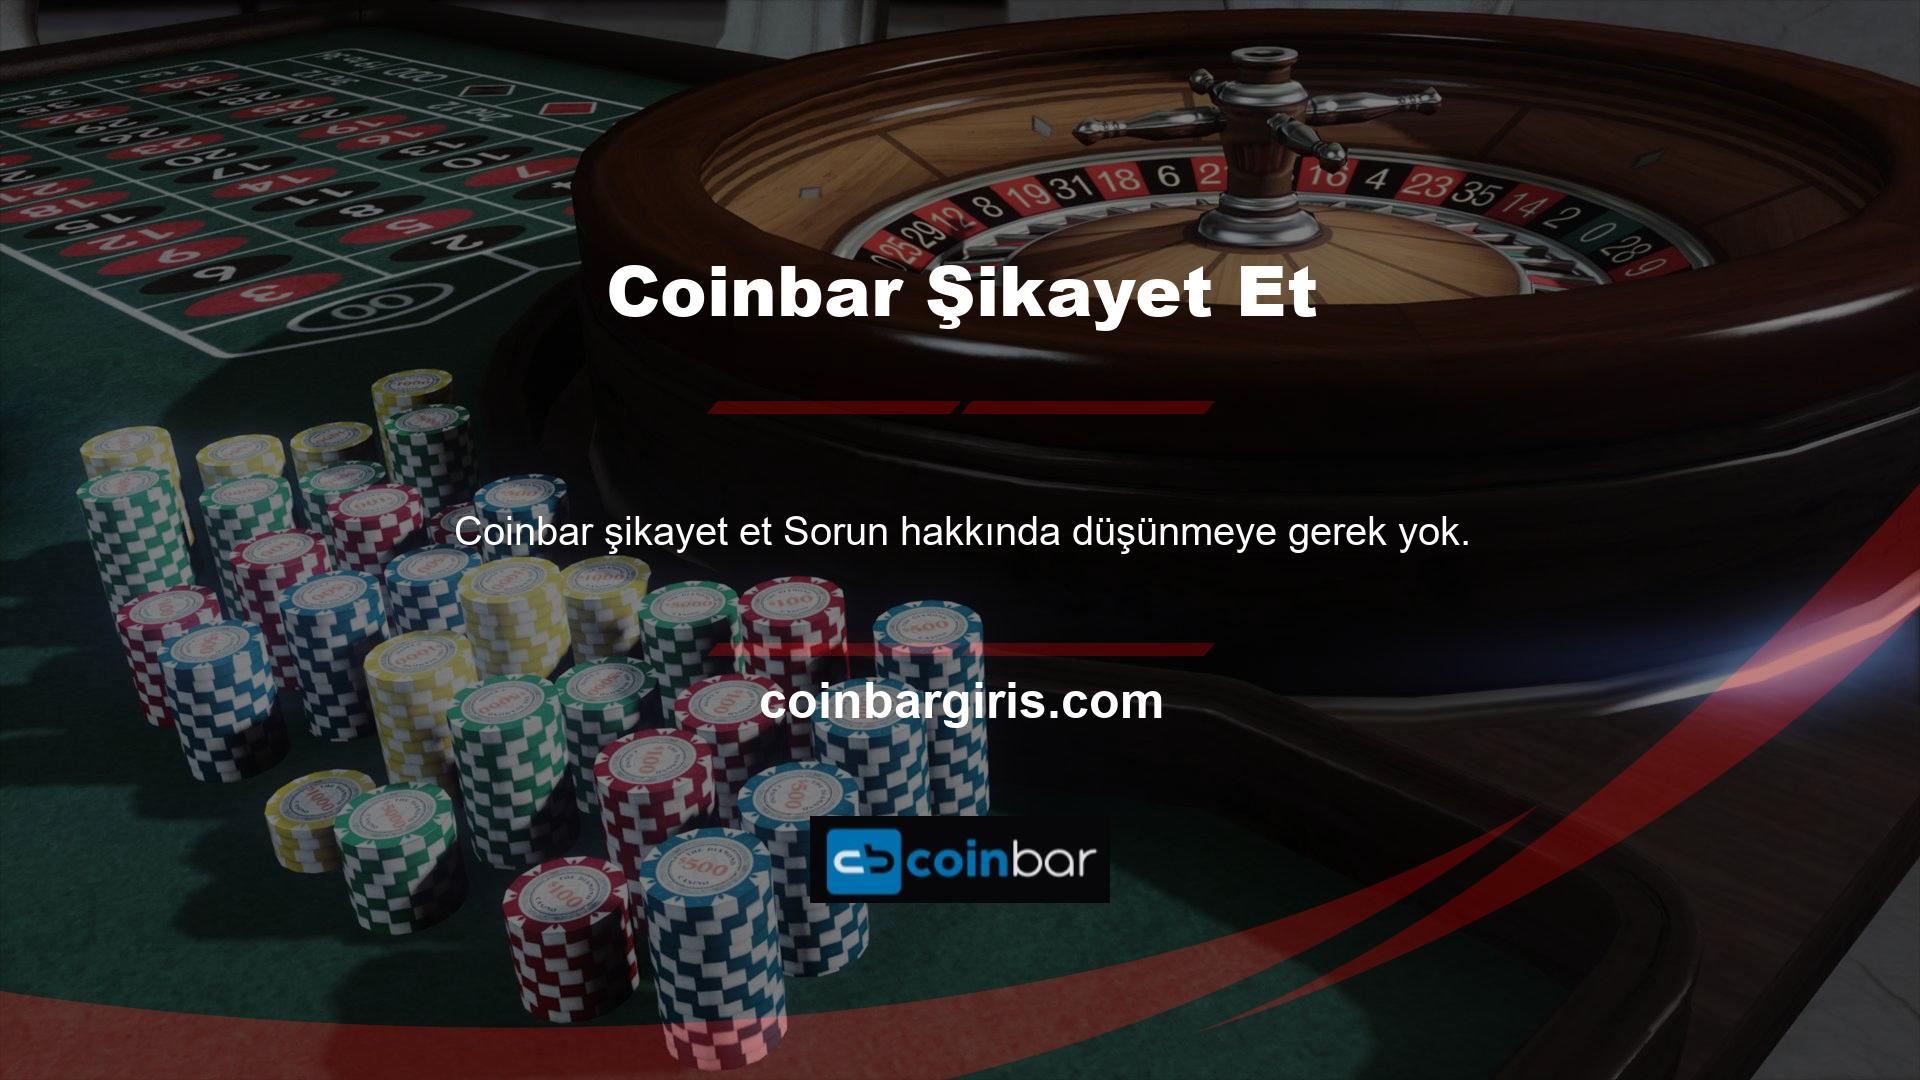 Coinbar Süper Lig bahis sitesi hakkında herhangi bir şikayet bulunmamaktadır